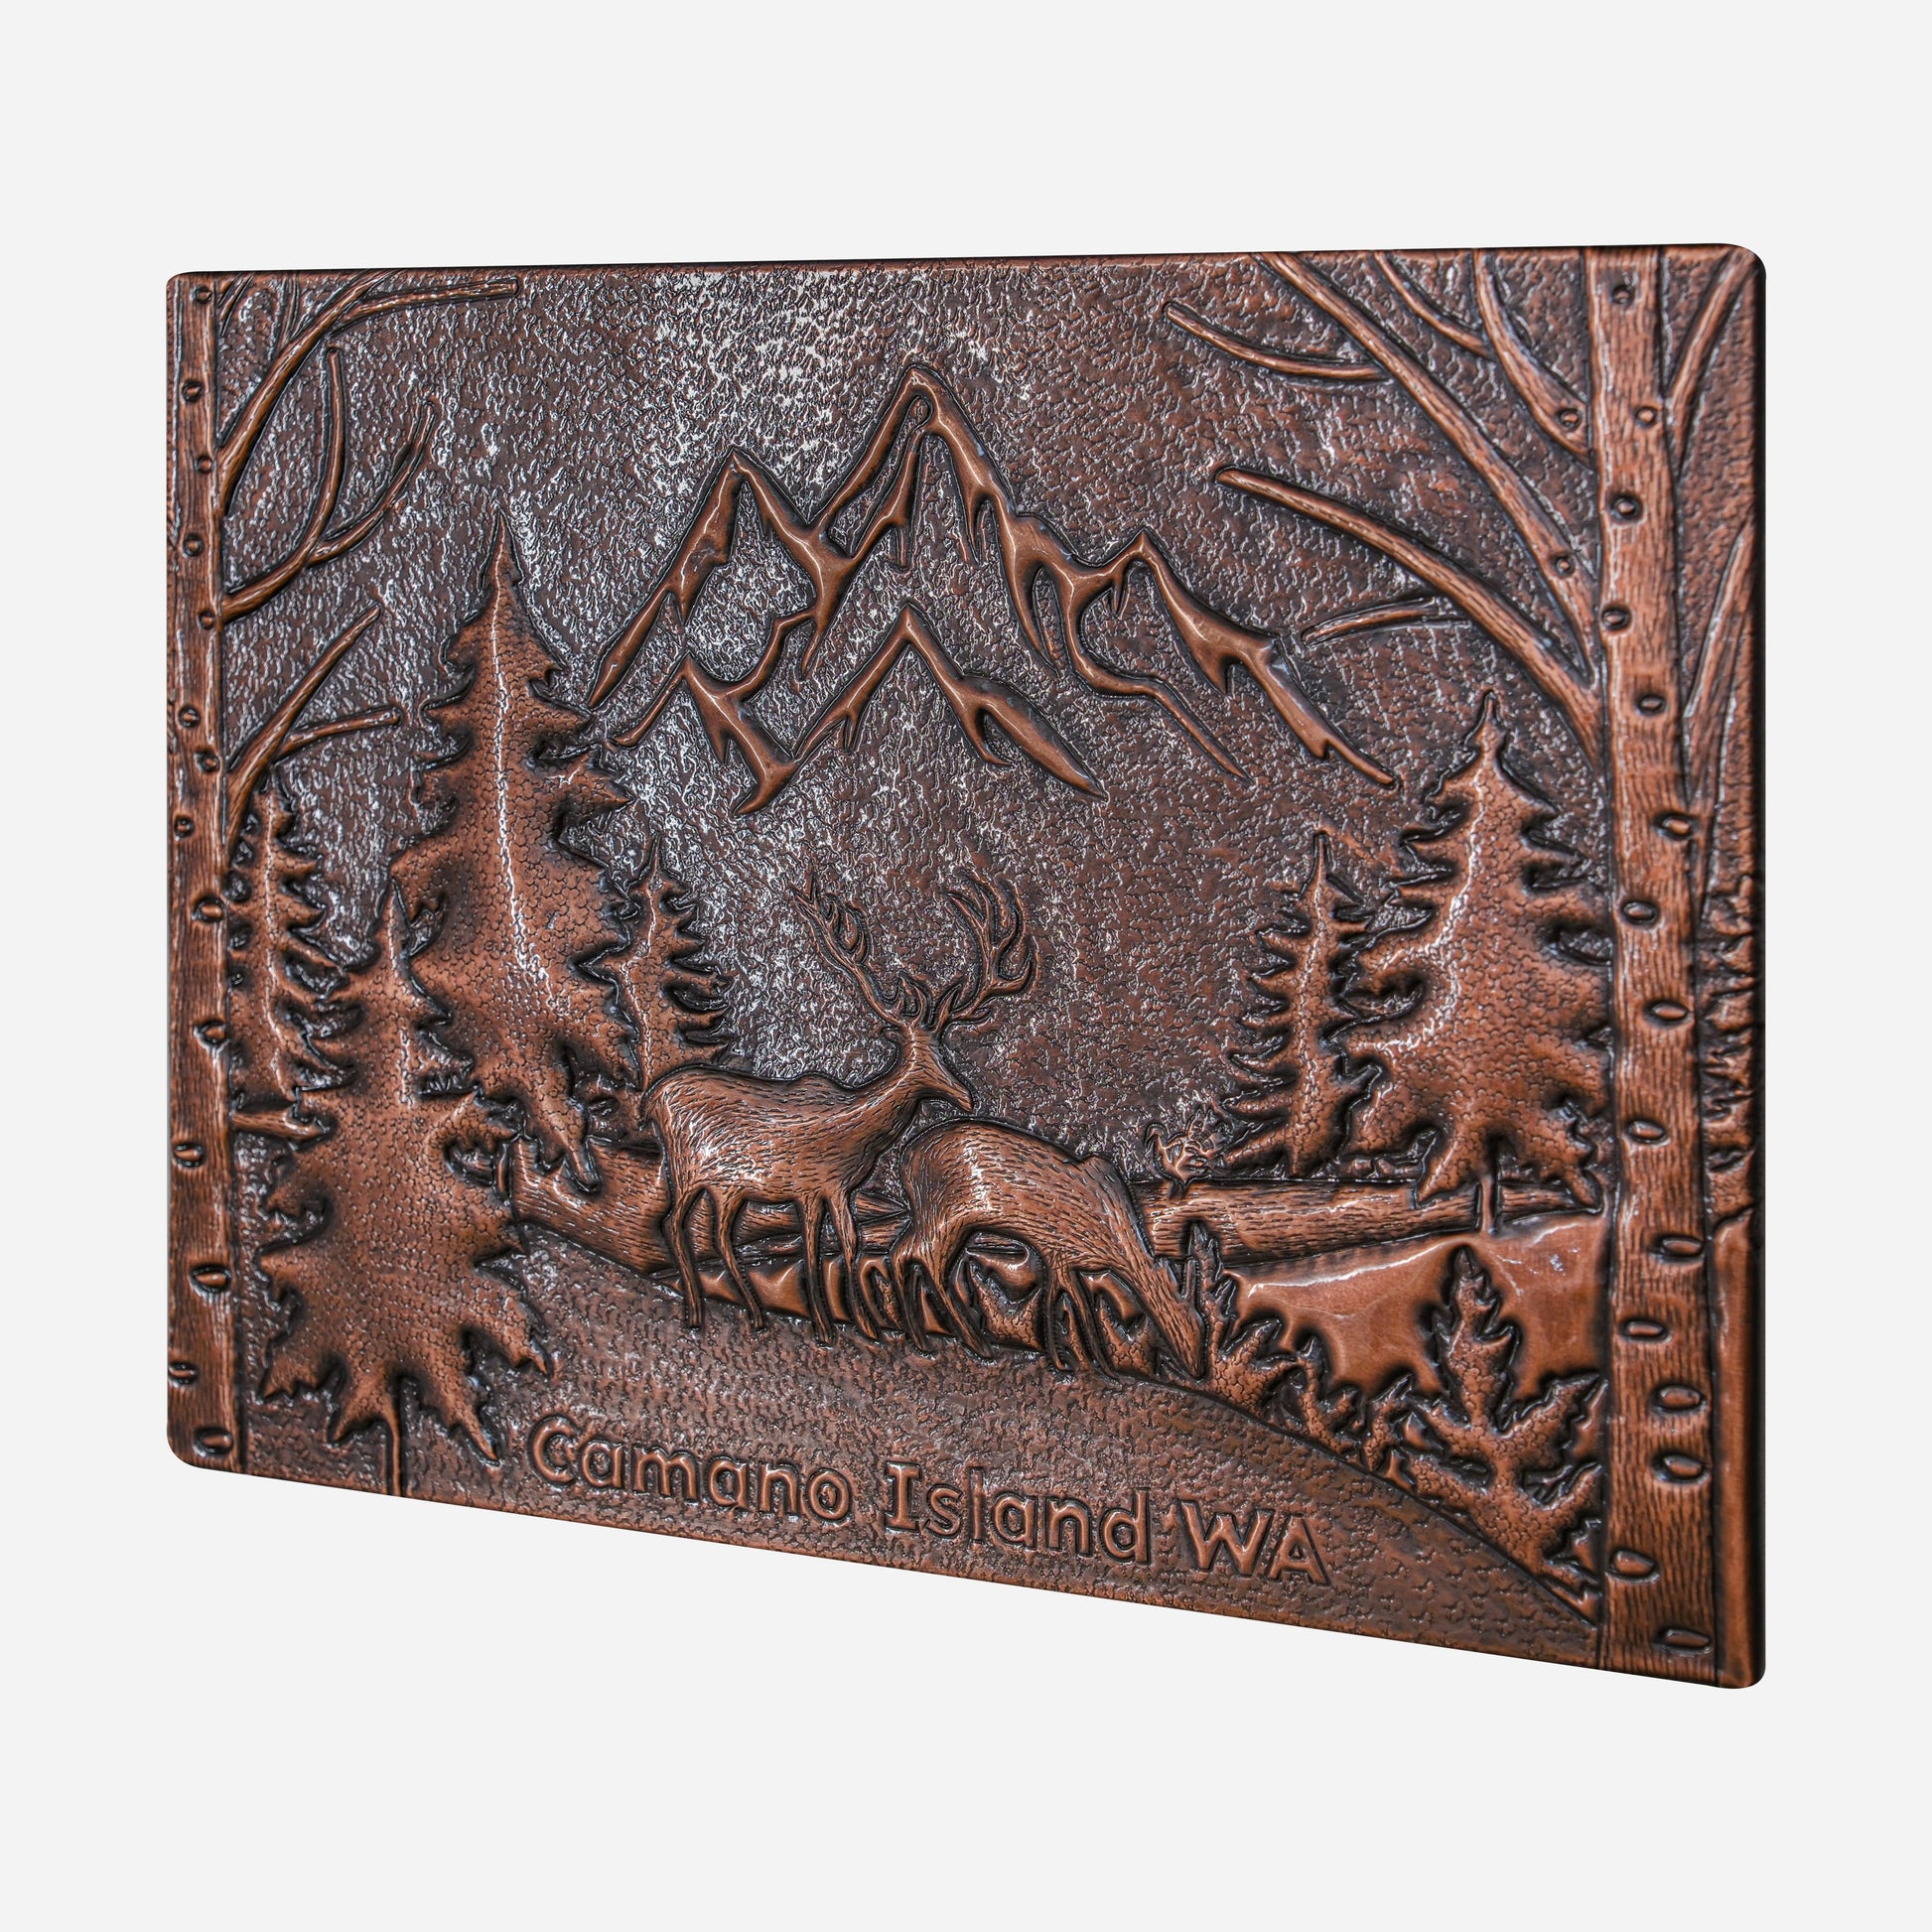 Wilderness Whisper Artisan Copper Backsplash - Mountain and Deer Design